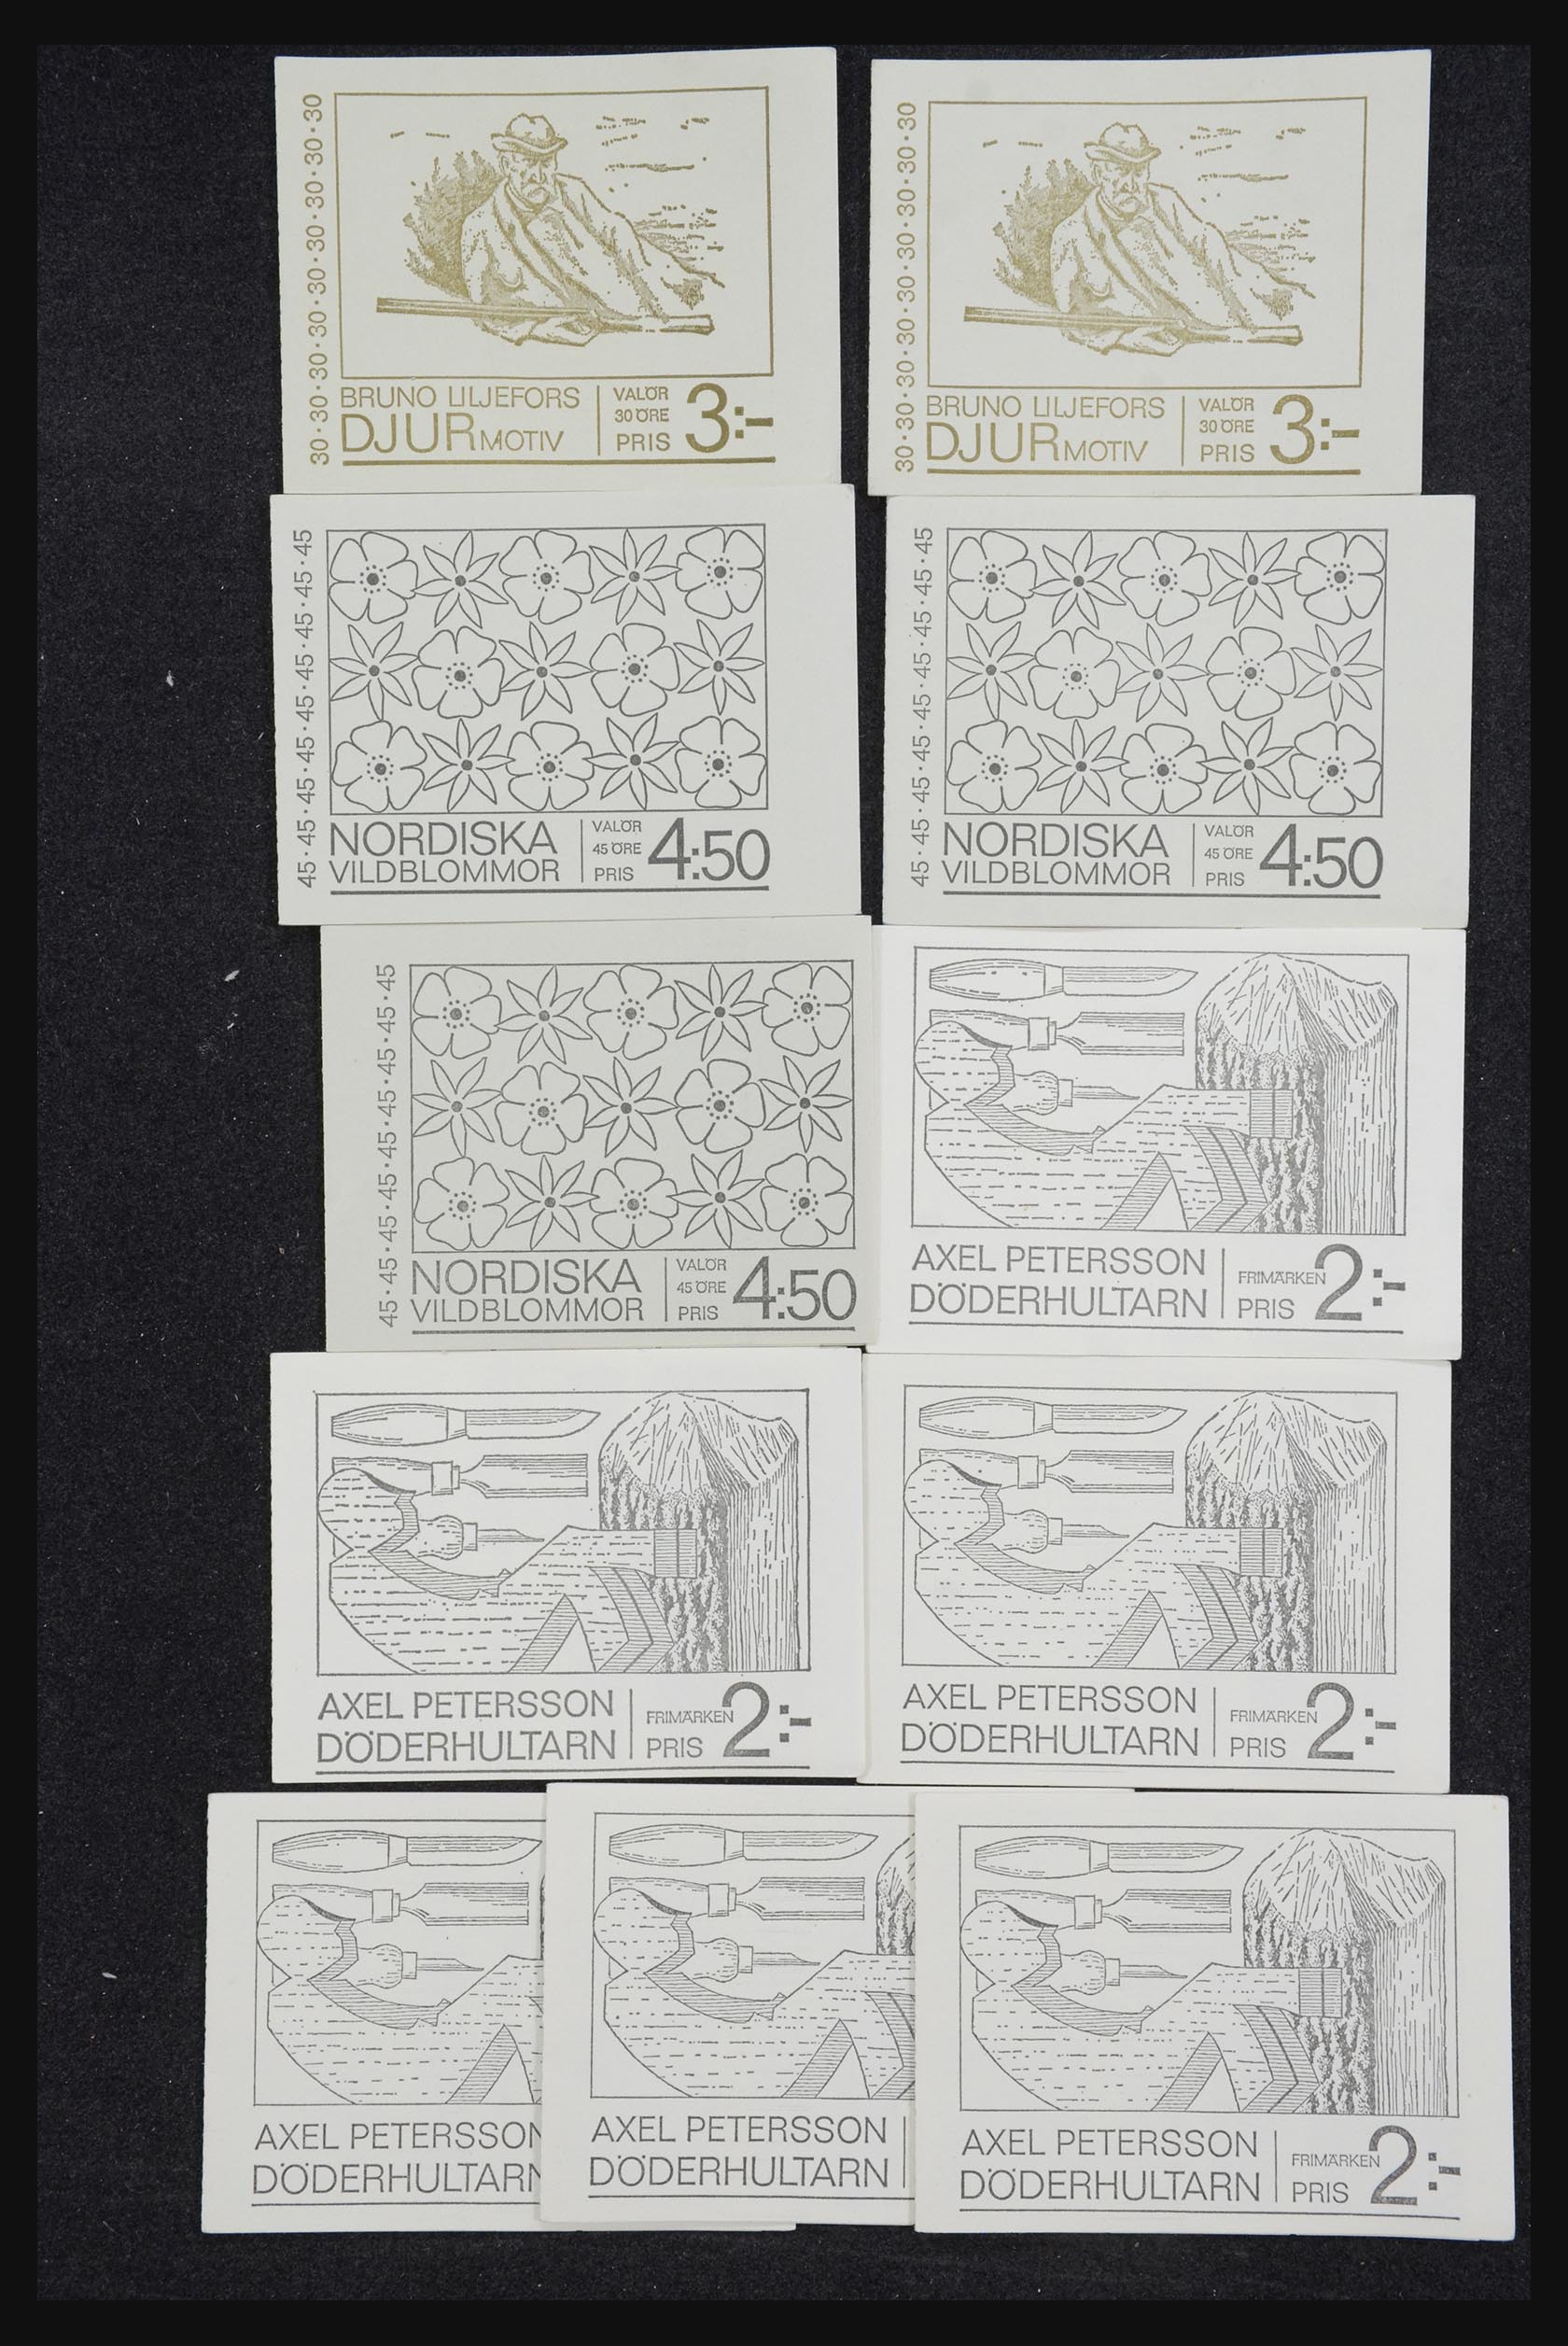 32026 015 - 32026 Sweden stampbooklets 1949-1990.